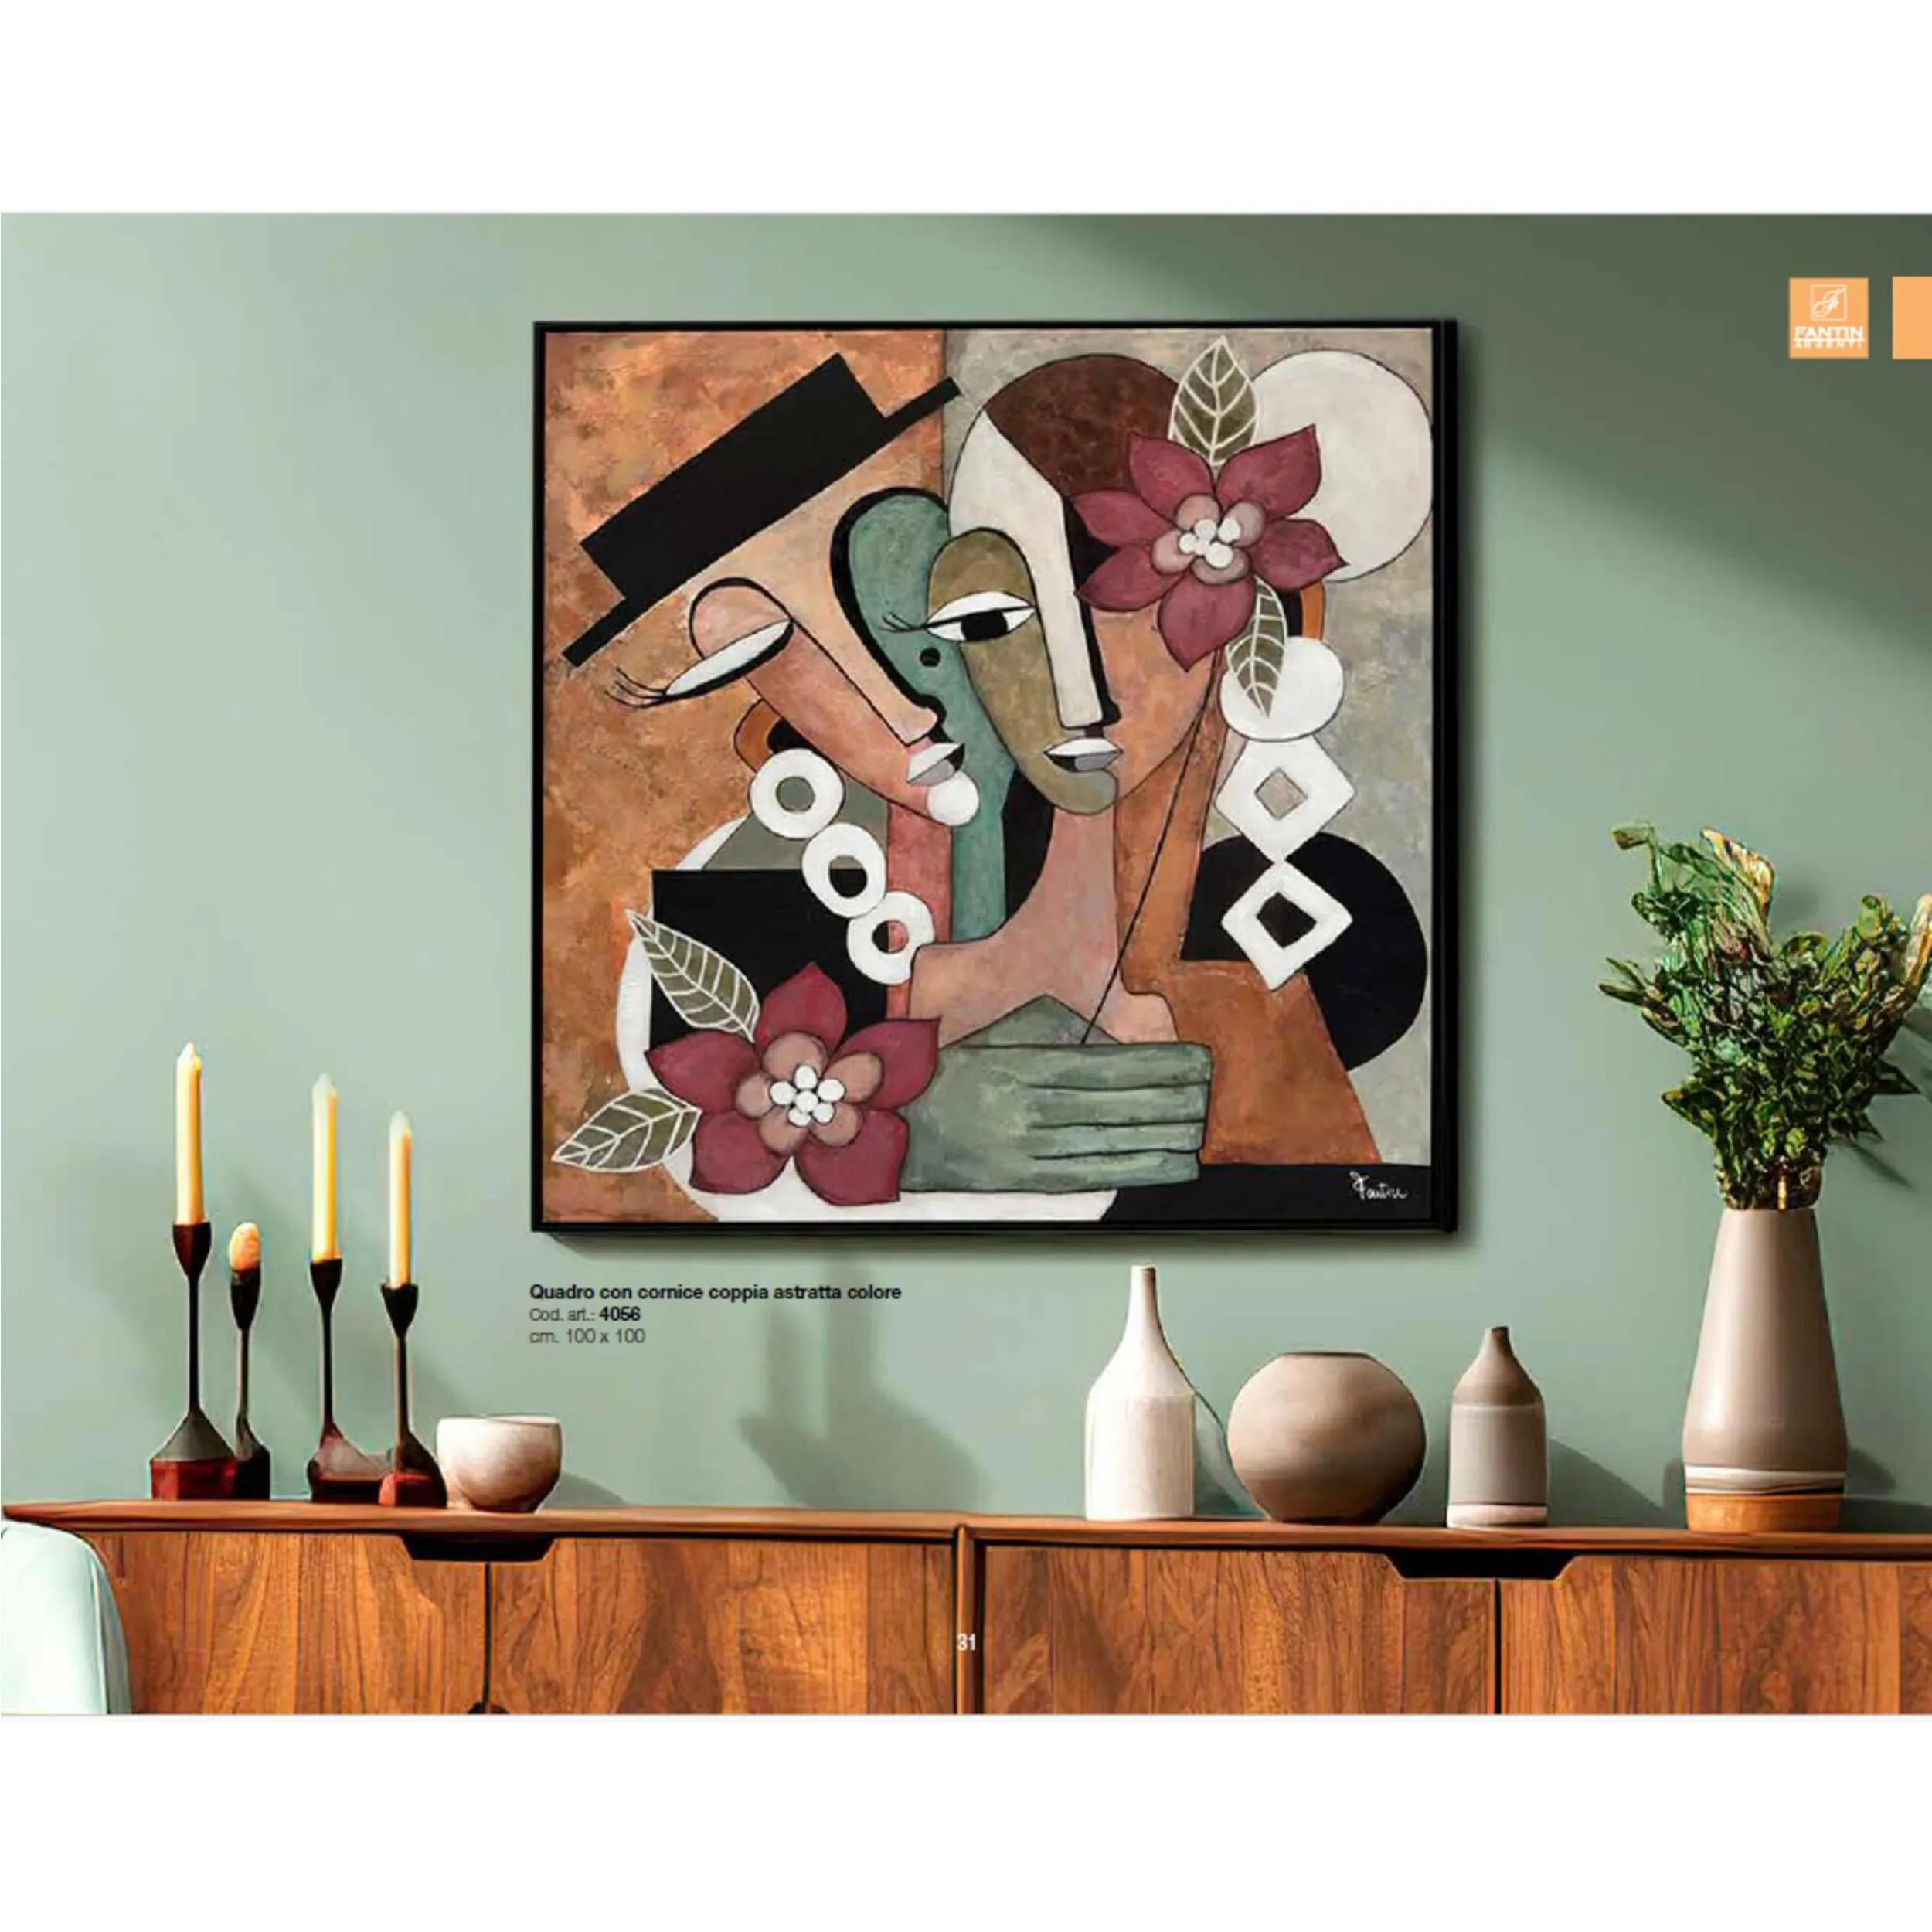 Quadro con cornice da parete, COPPIA ASTRATTA COLORE 100x100x1,6 cm pannello in legno colore con colori acrilici e tempera